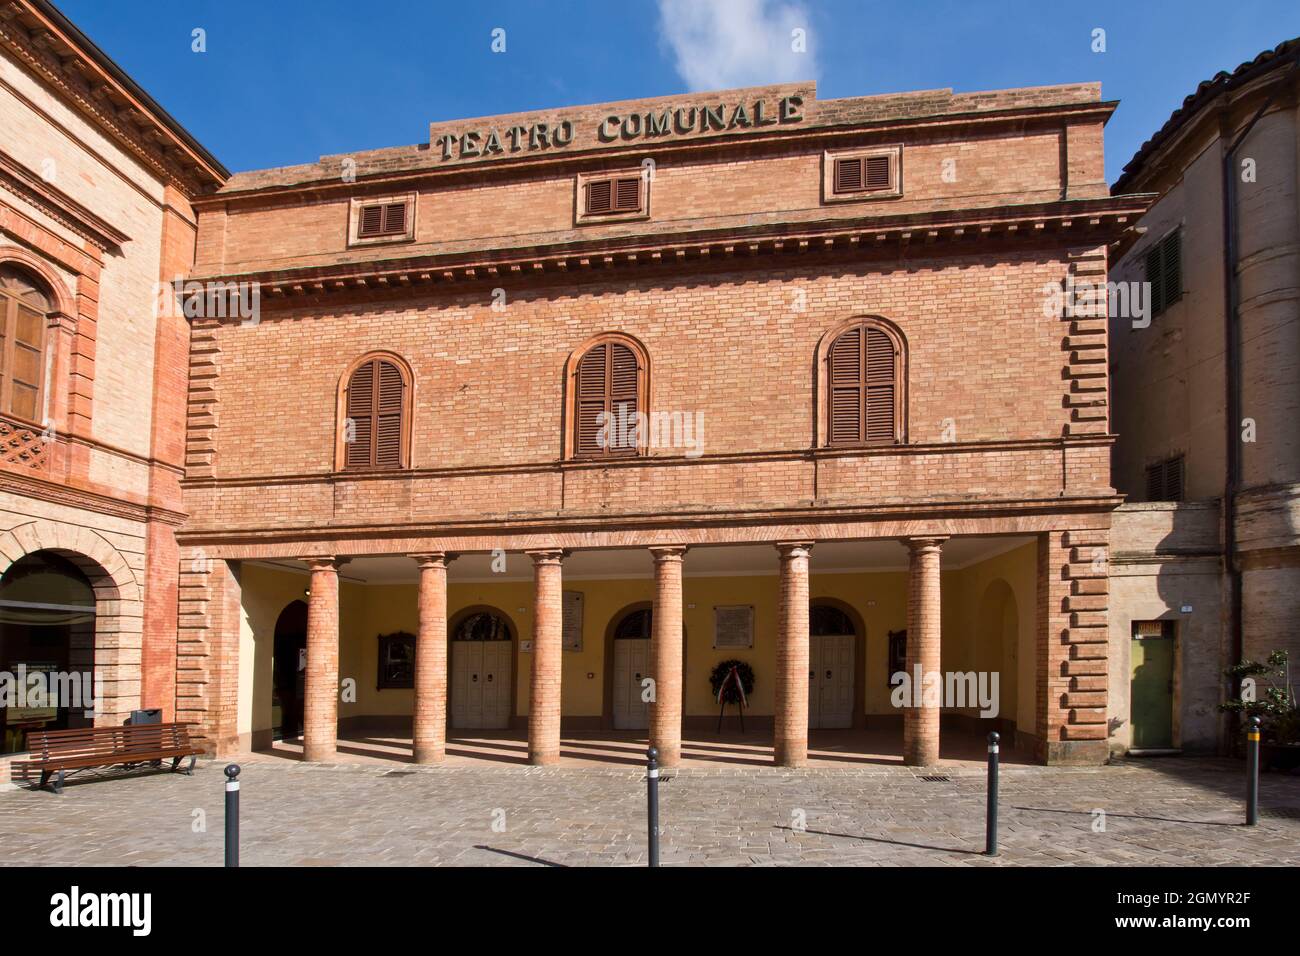 Village, Fortress, Theatre, Montecarotto, Marche, Italy, Europe Stock Photo